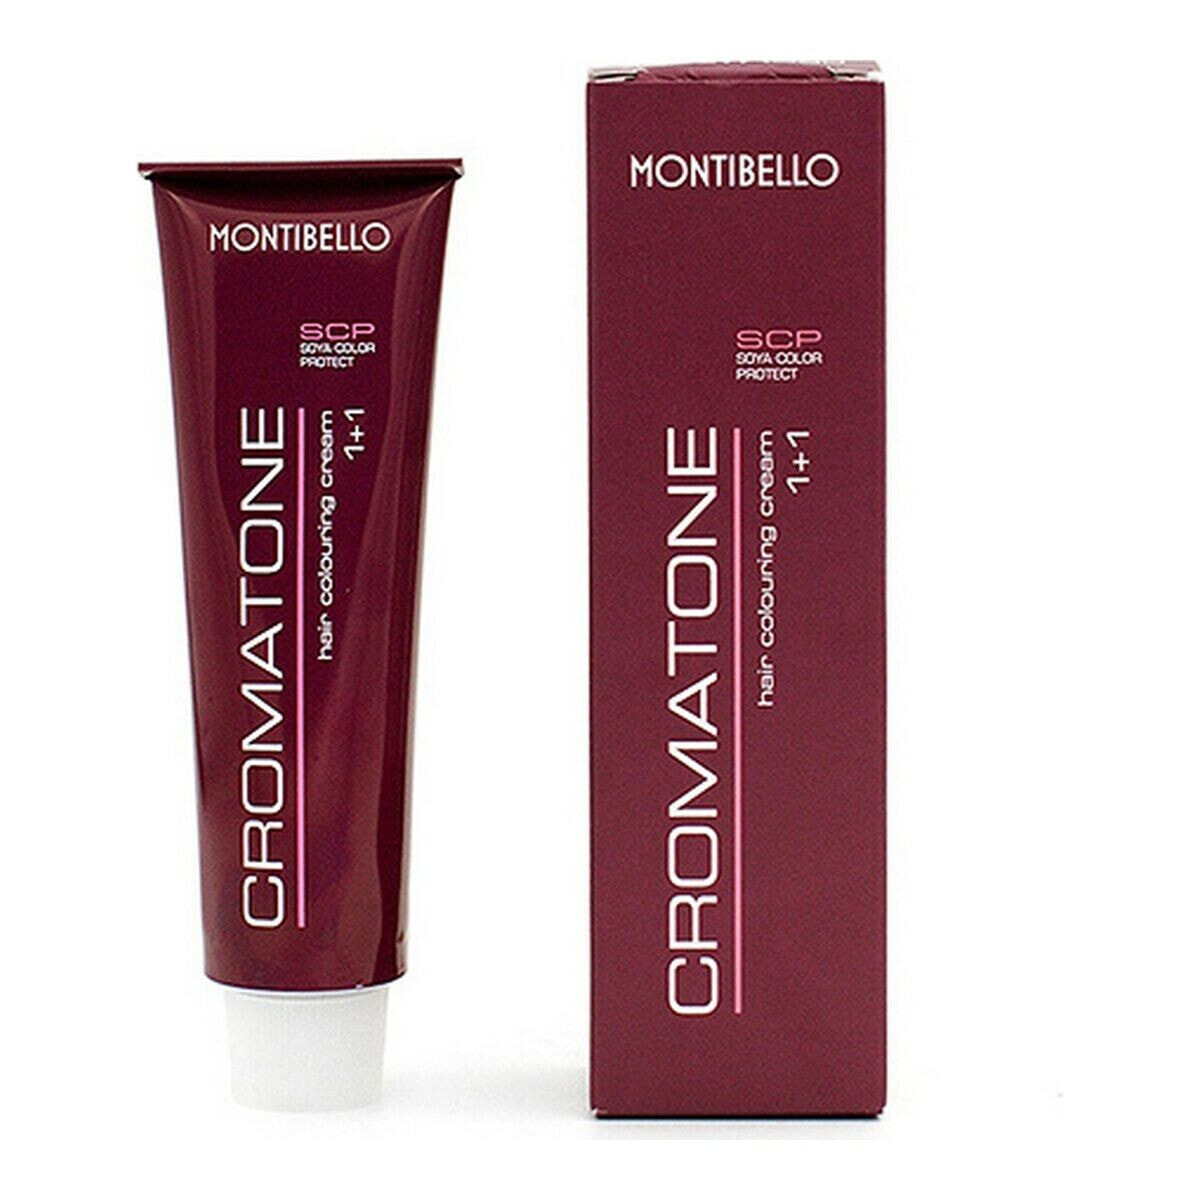 Постоянная краска Cromatone Montibello 8290 Nº 3 (60 ml)